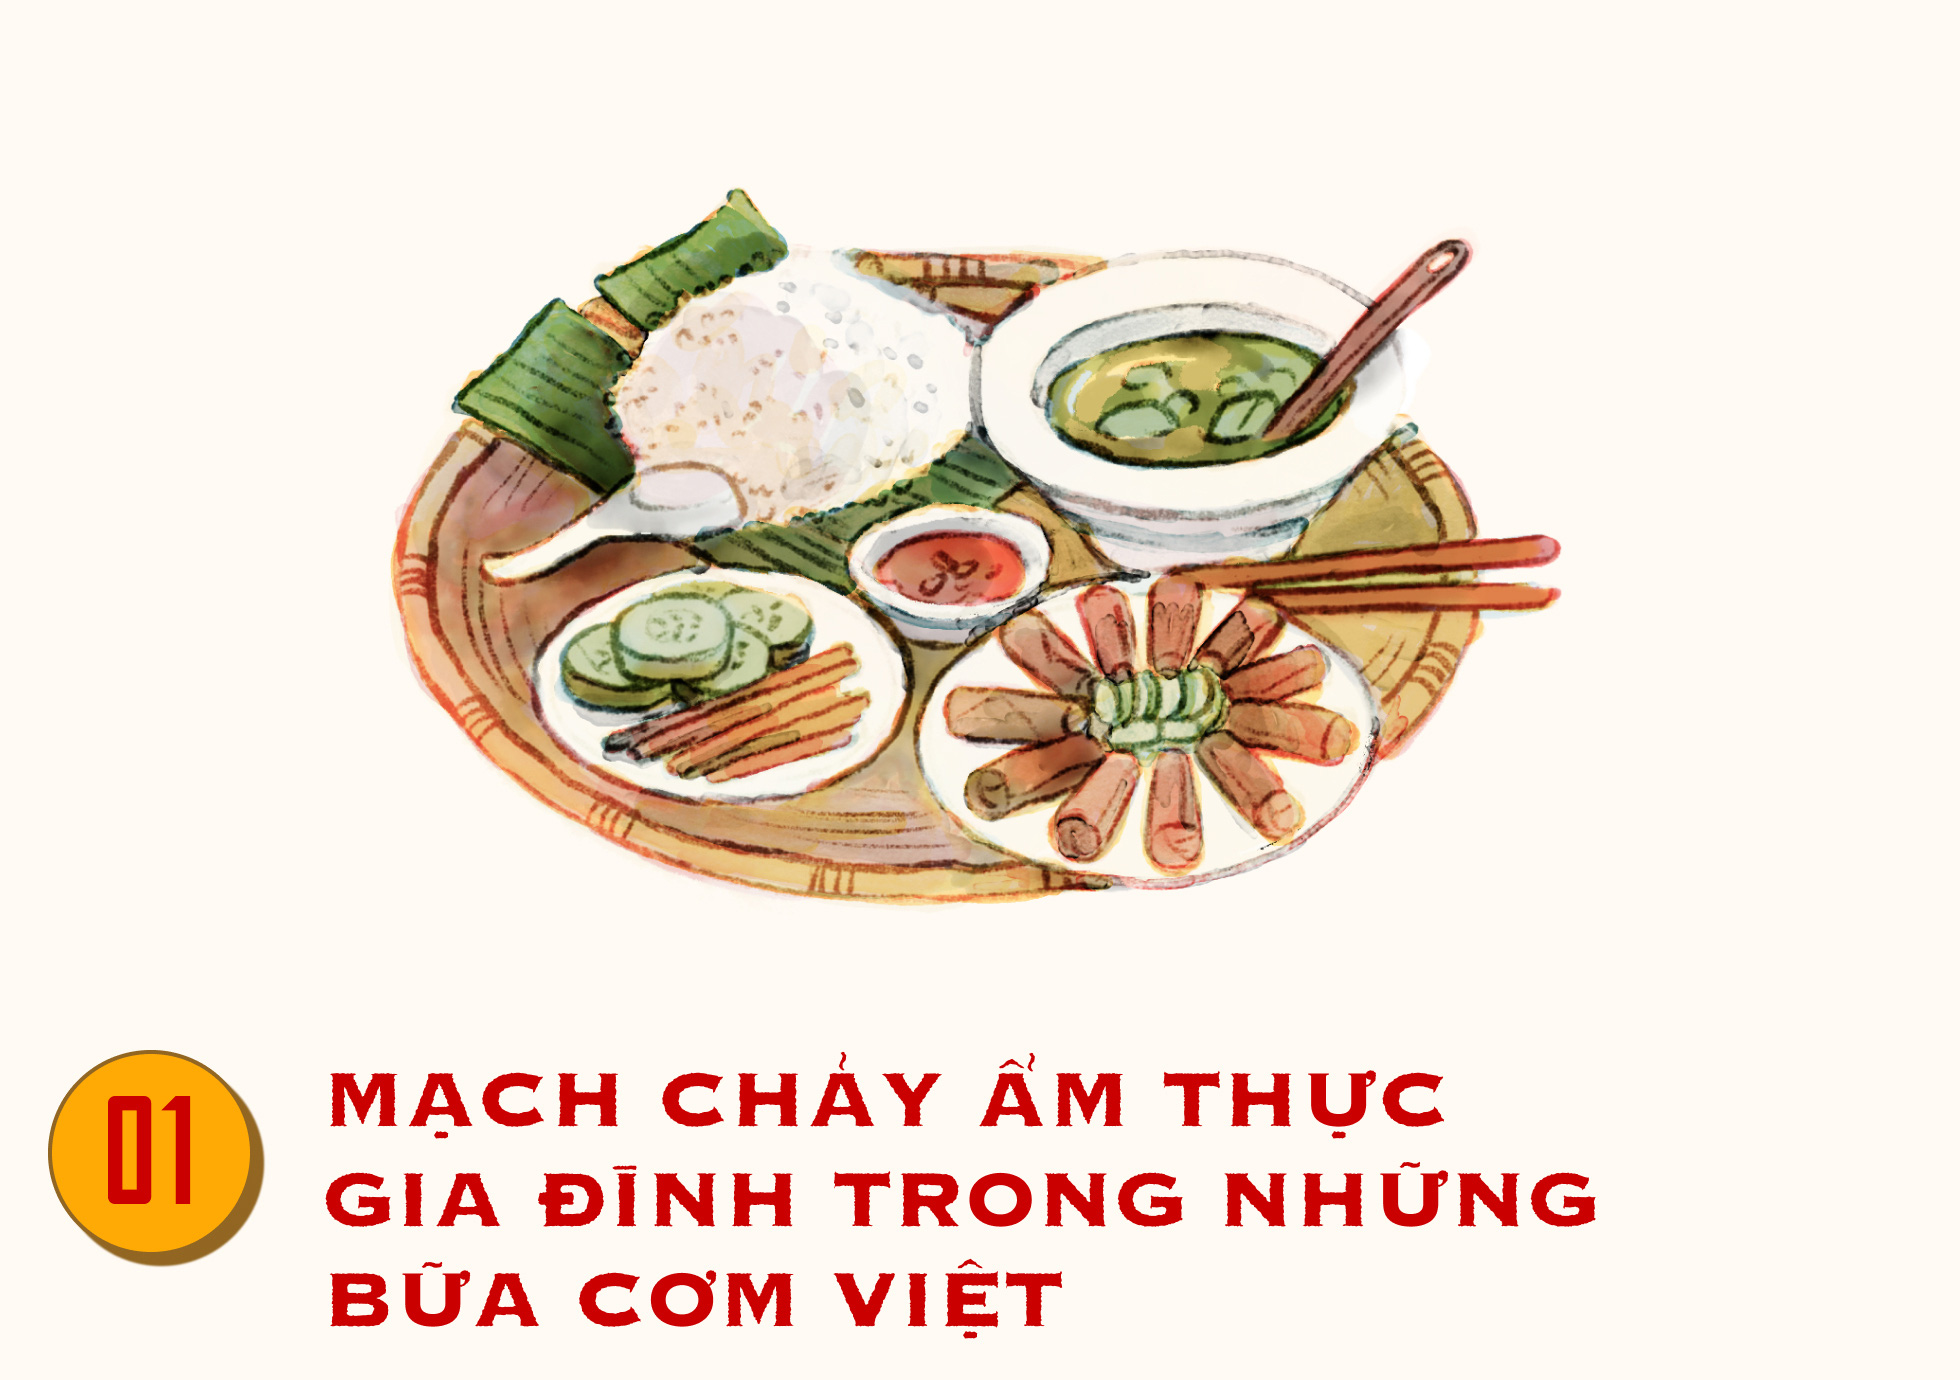 Nếp nhà cơm Việt mang trong mình một phần tinh hoa của văn hóa Việt. Hãy xem hình ảnh đẹp này để hiểu thêm về giá trị văn hóa của bữa ăn gia đình trong đời sống Việt Nam.